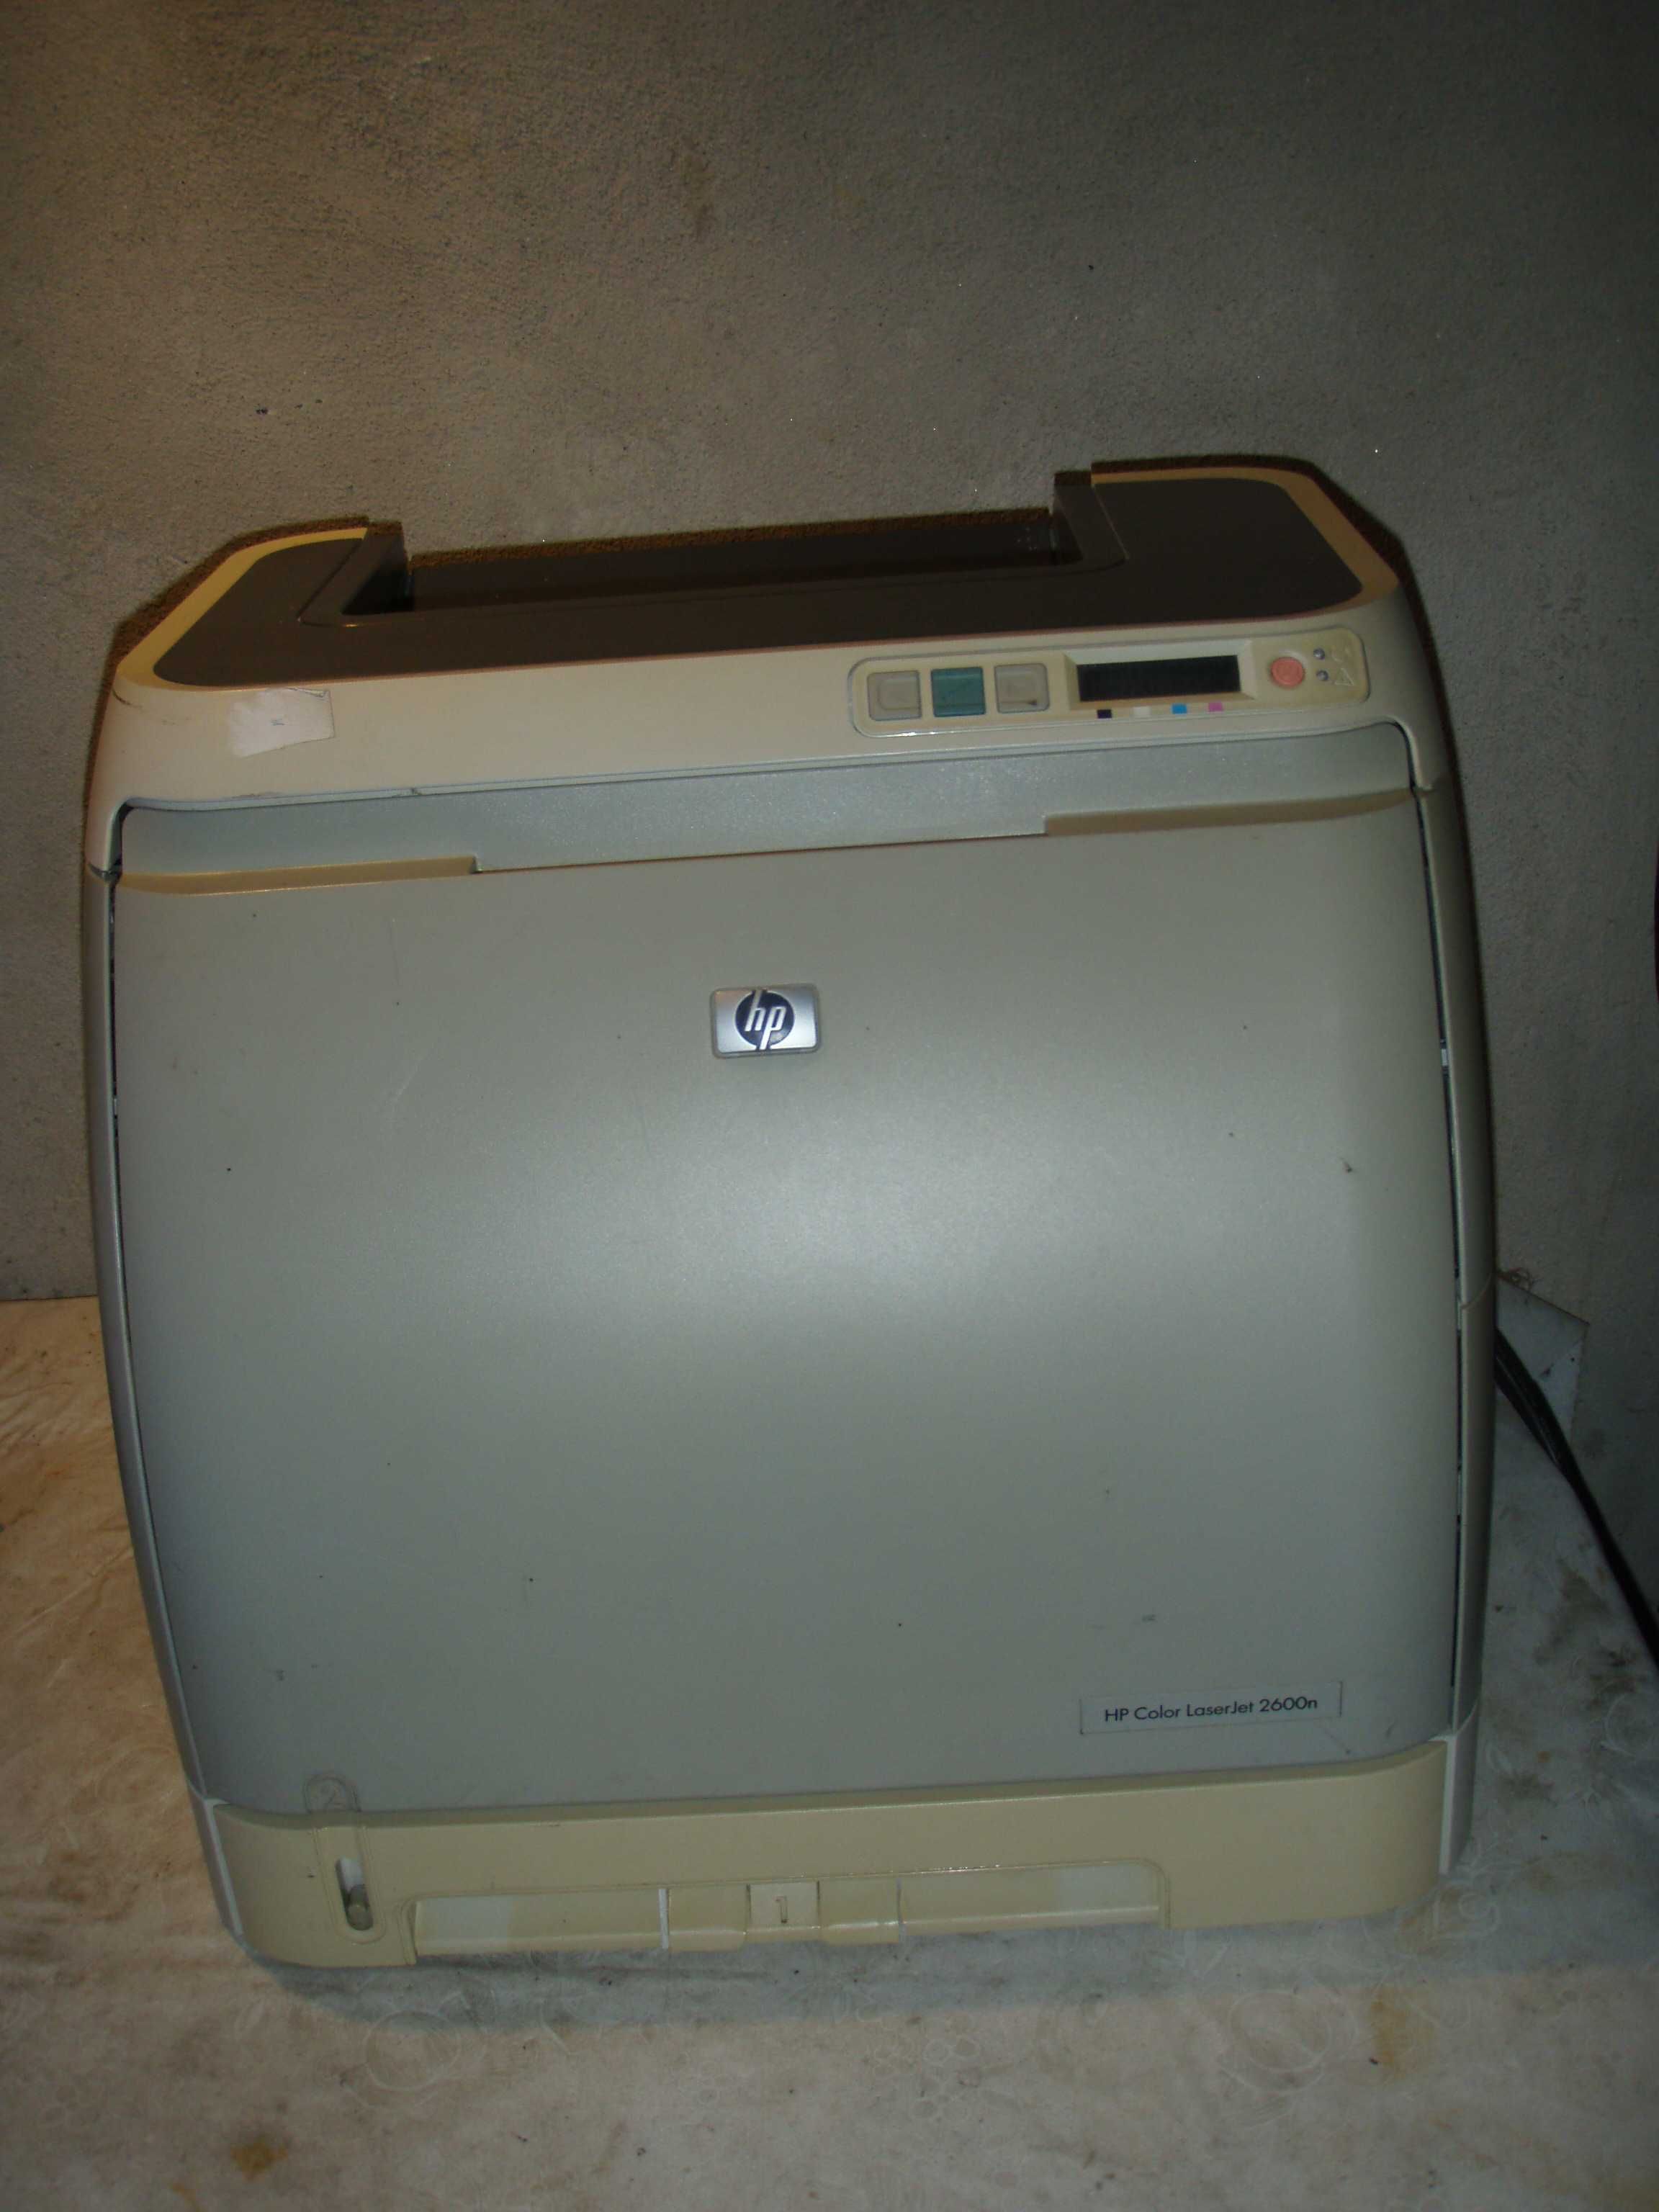 Imprimanta laser color cu placa de retea HP 2600n, murdareste foaia